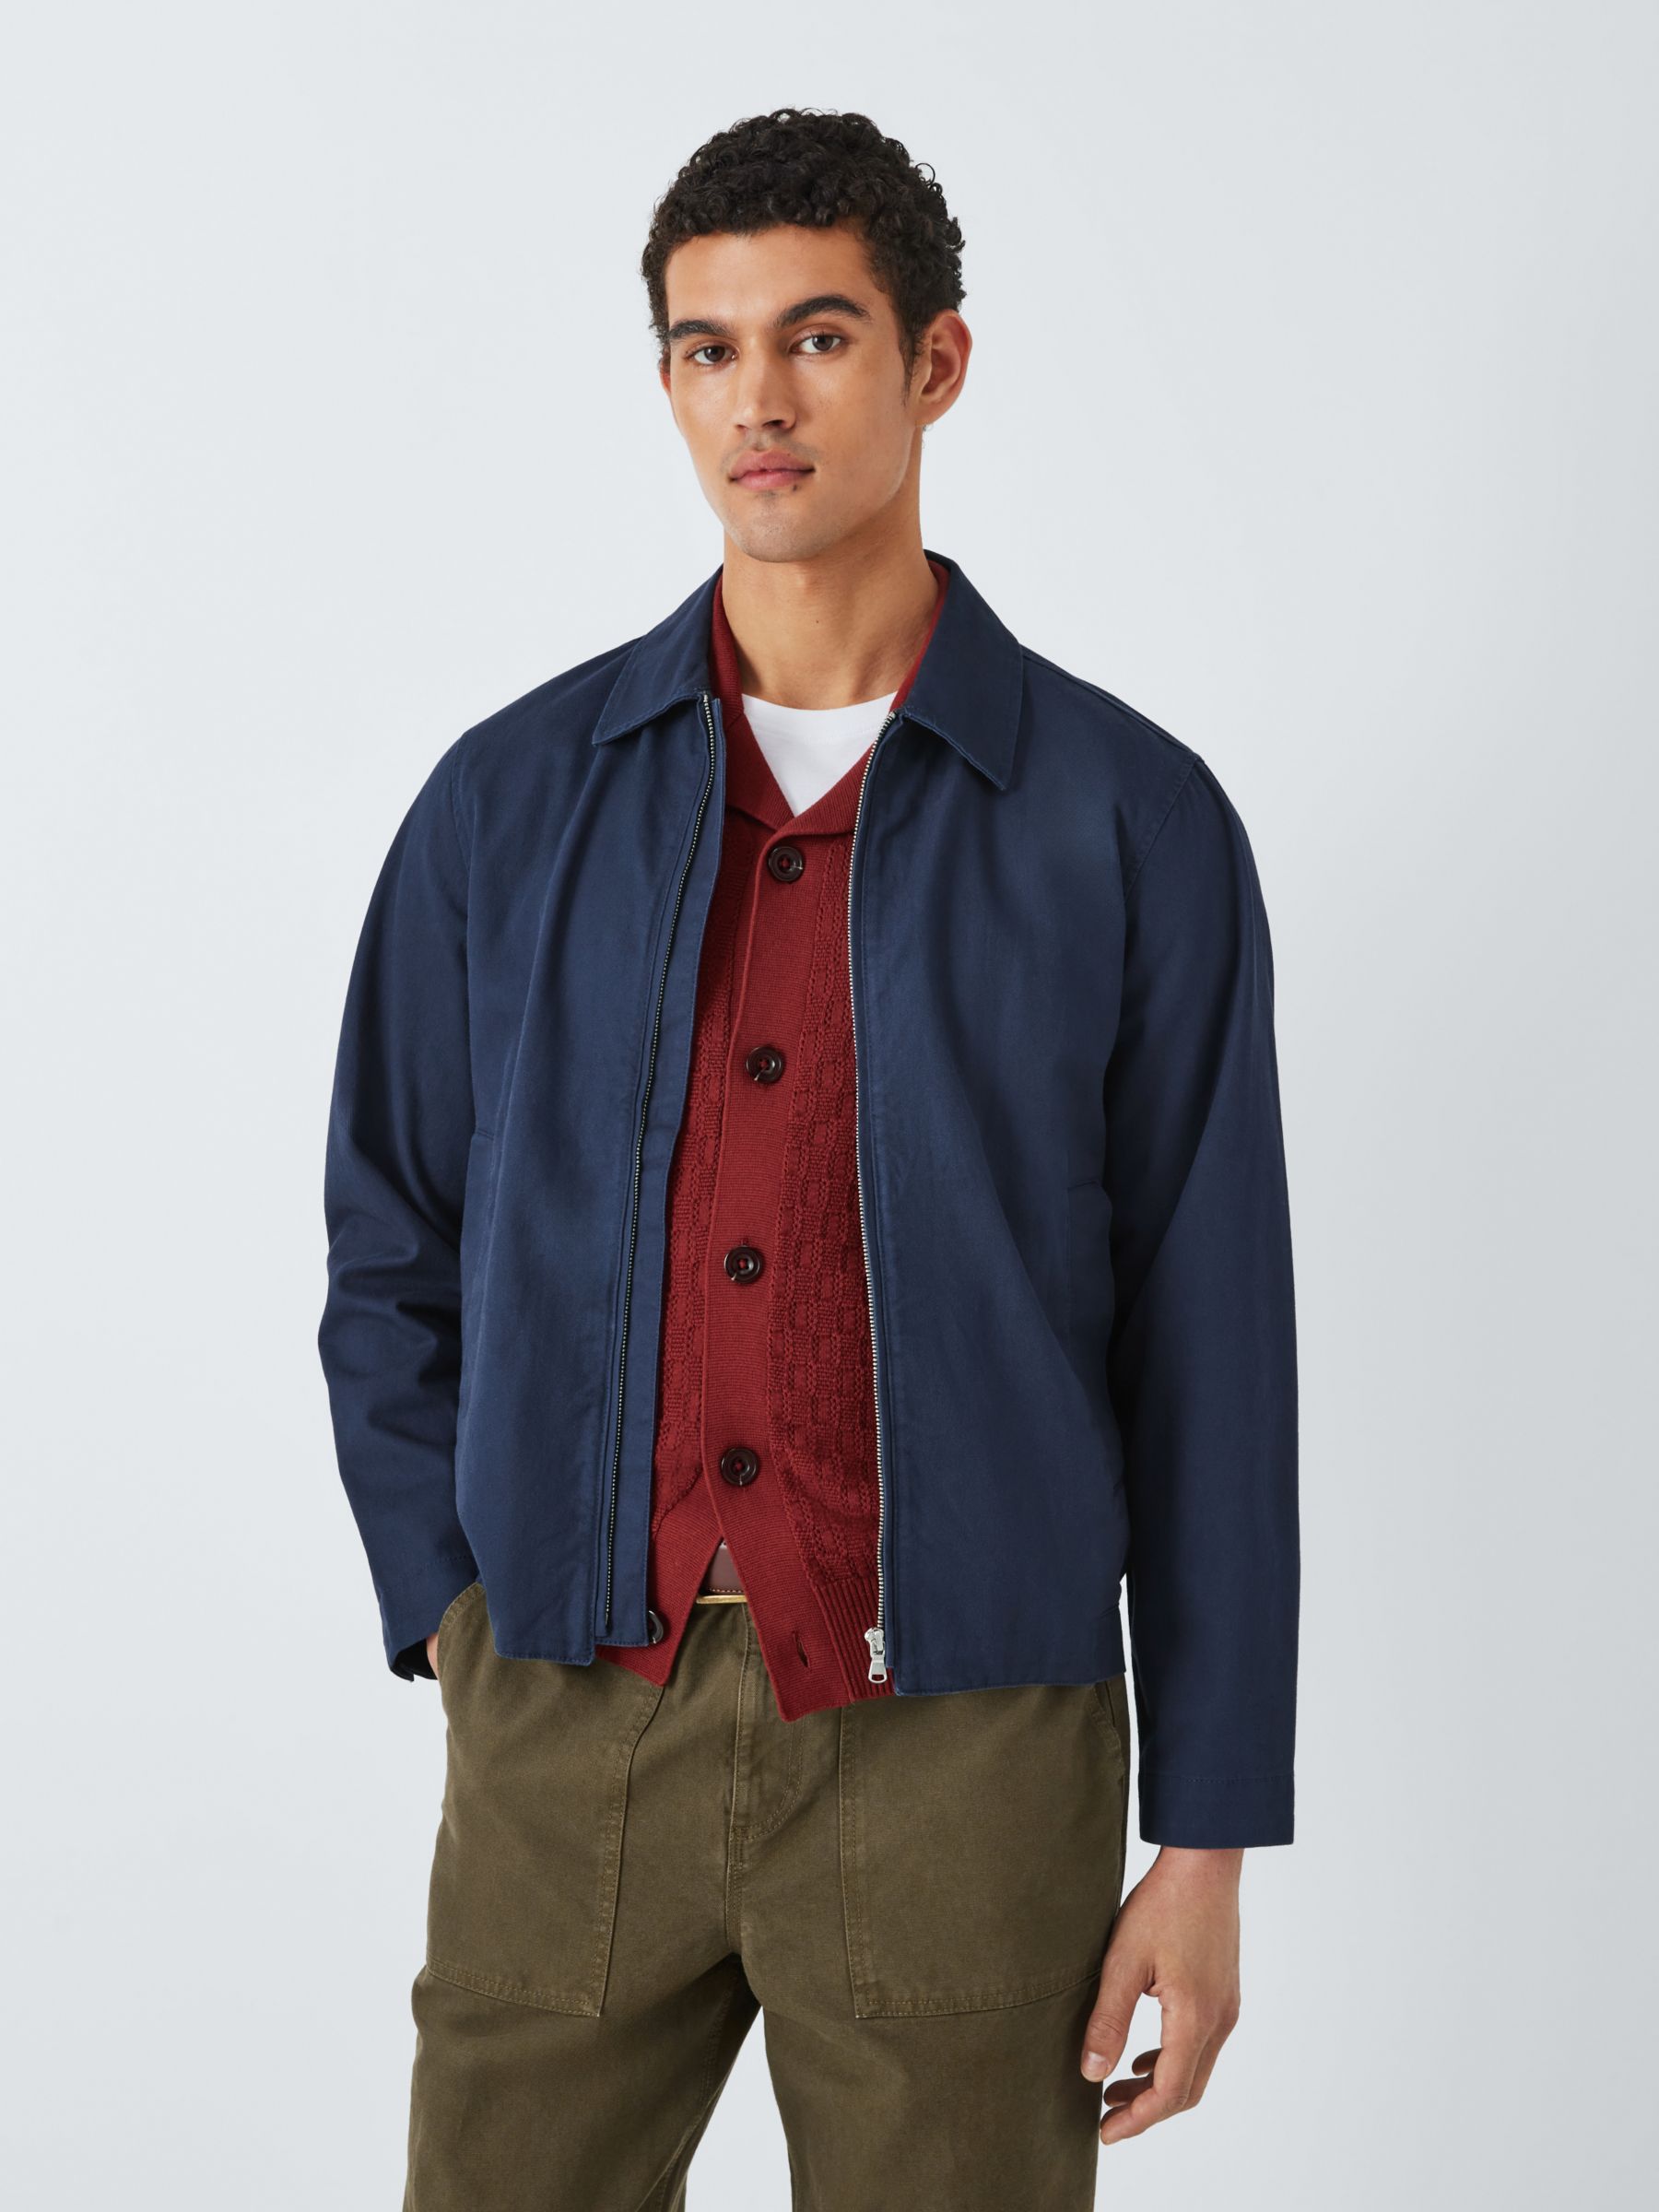 John Lewis Men's Cotton Linen Zip Jacket, Navy, M